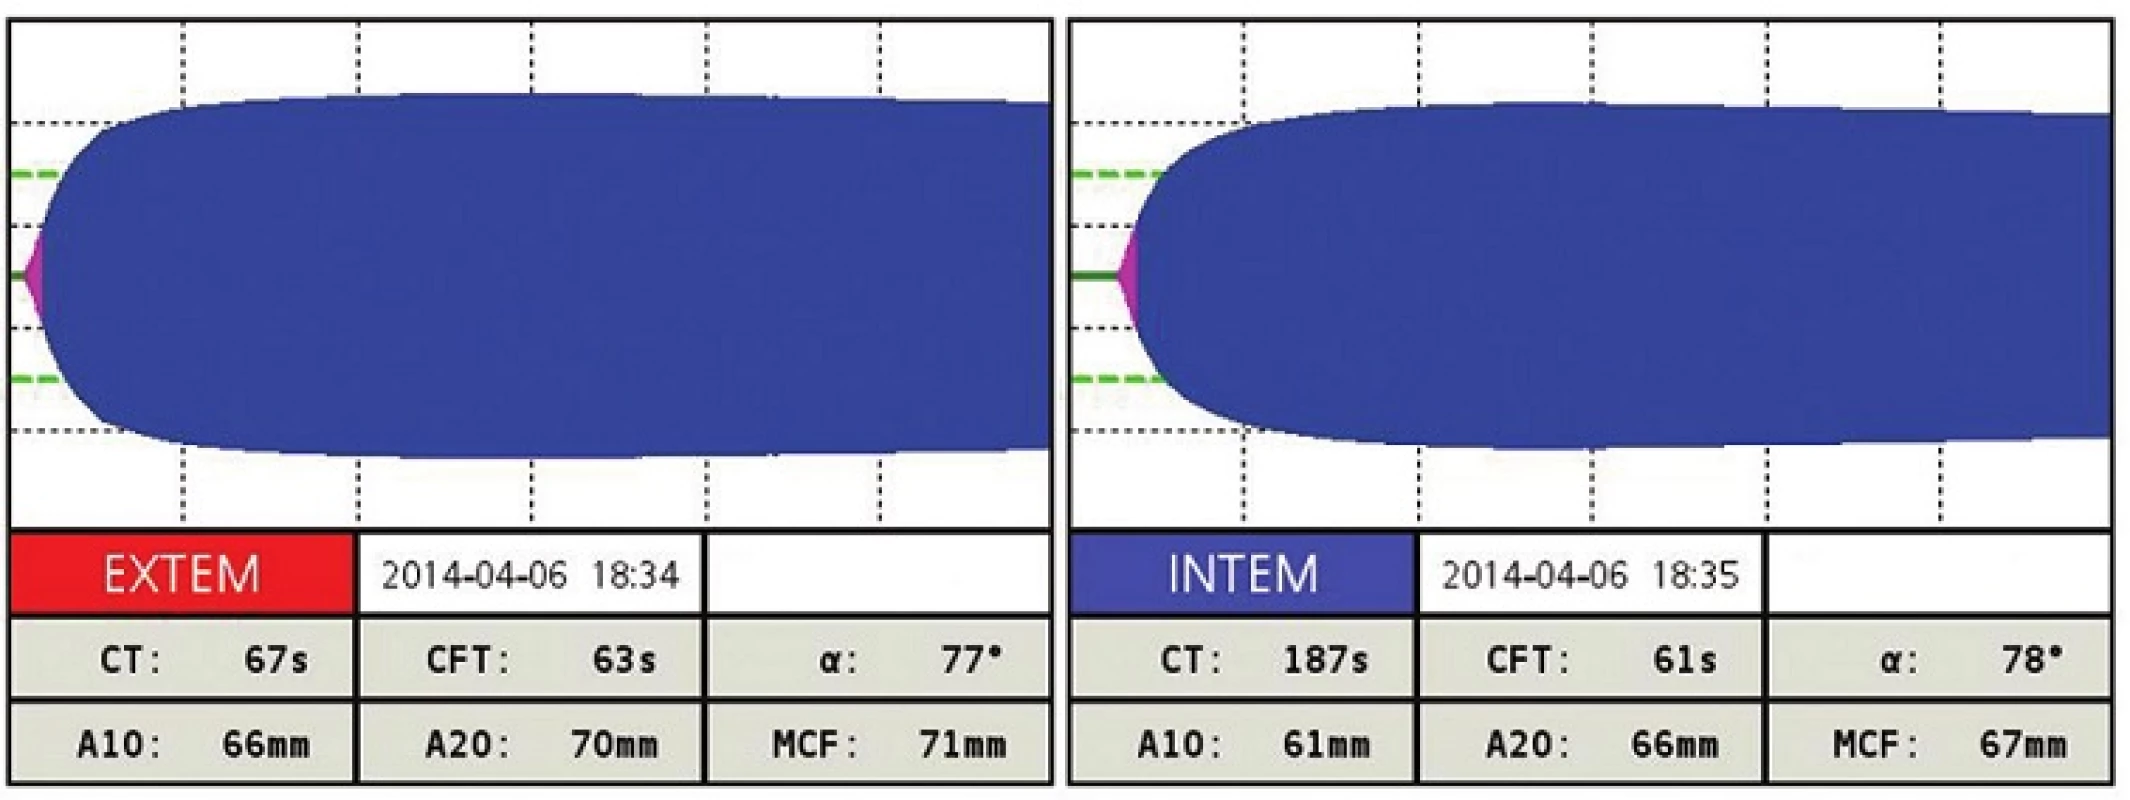 ROTEM po terapii pri INR 1,8
Všetky parametre EXTEM a INTEM sú v norme.
Fig. 3: ROTEM after the treatment with INR 1.8
All parameters of EXTEM and INTEM are normal.